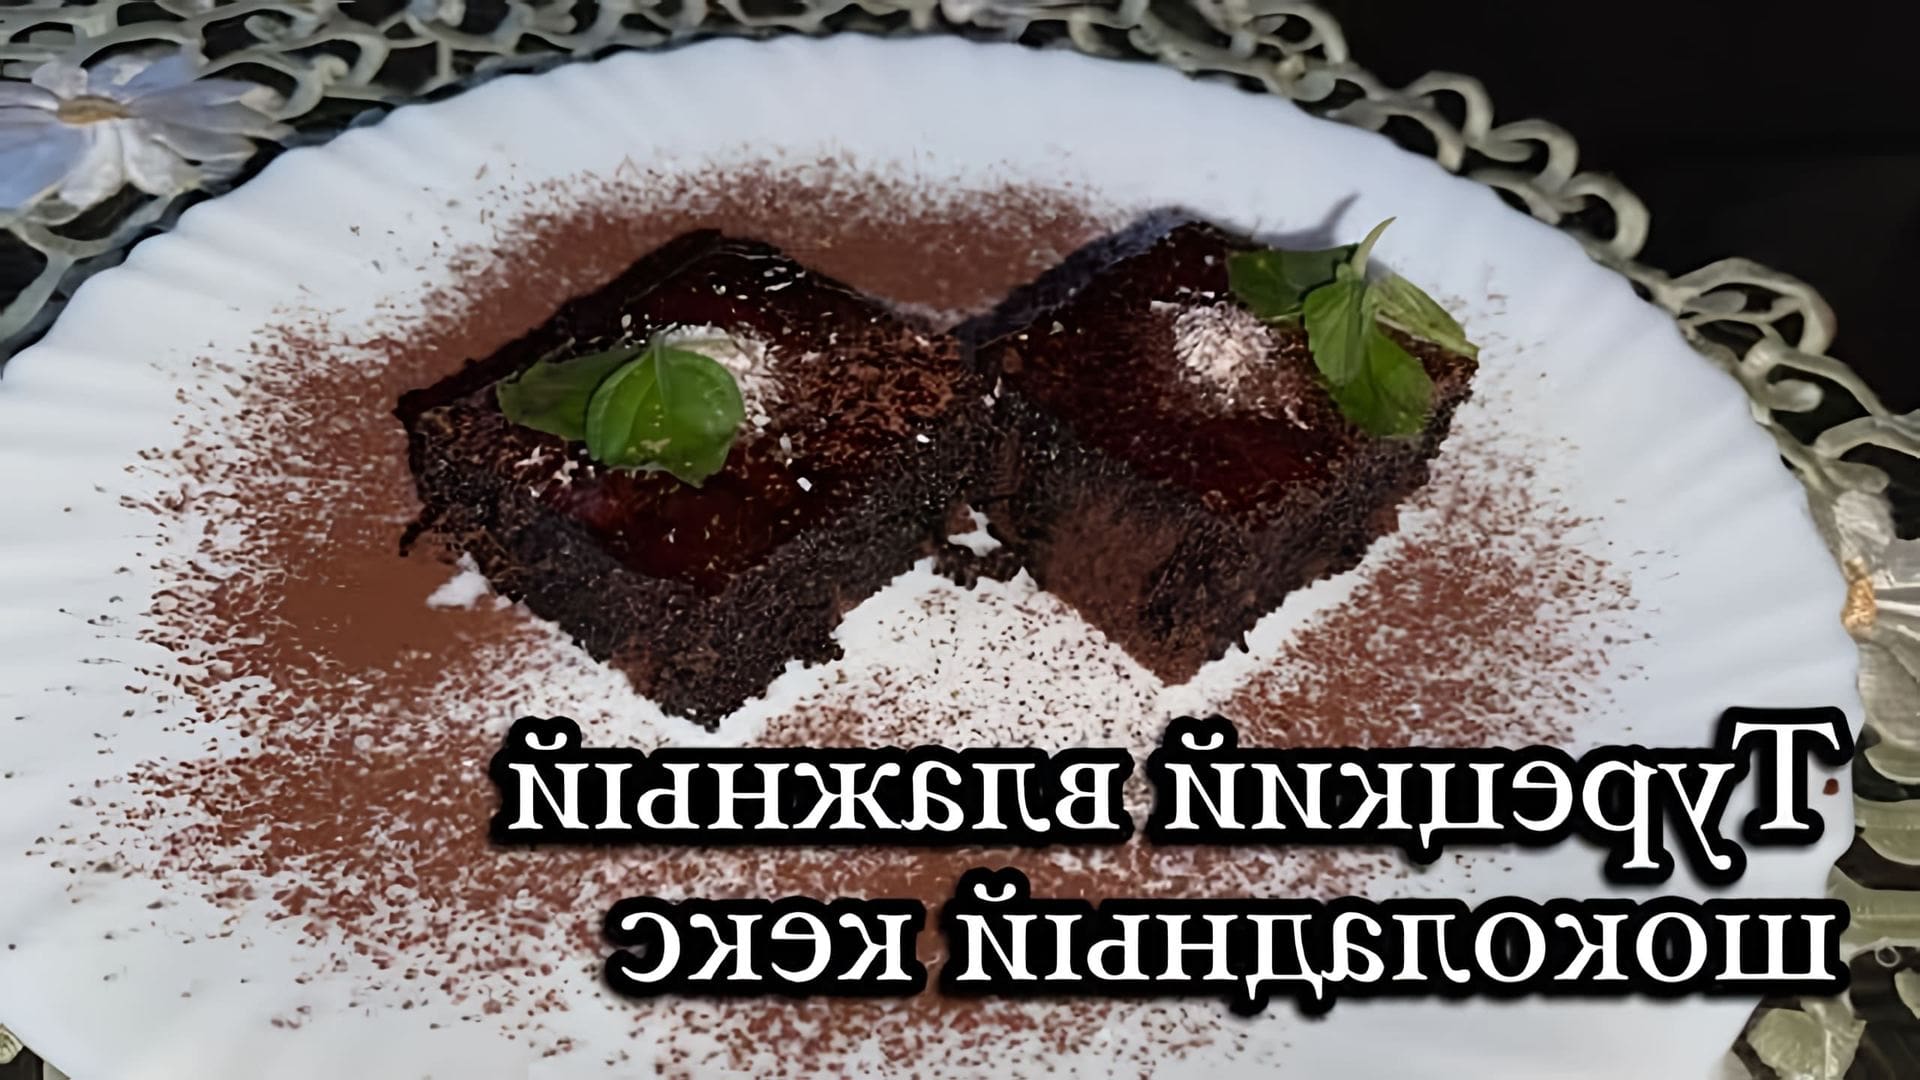 В этом видео демонстрируется процесс приготовления турецкого шоколадного бисквита